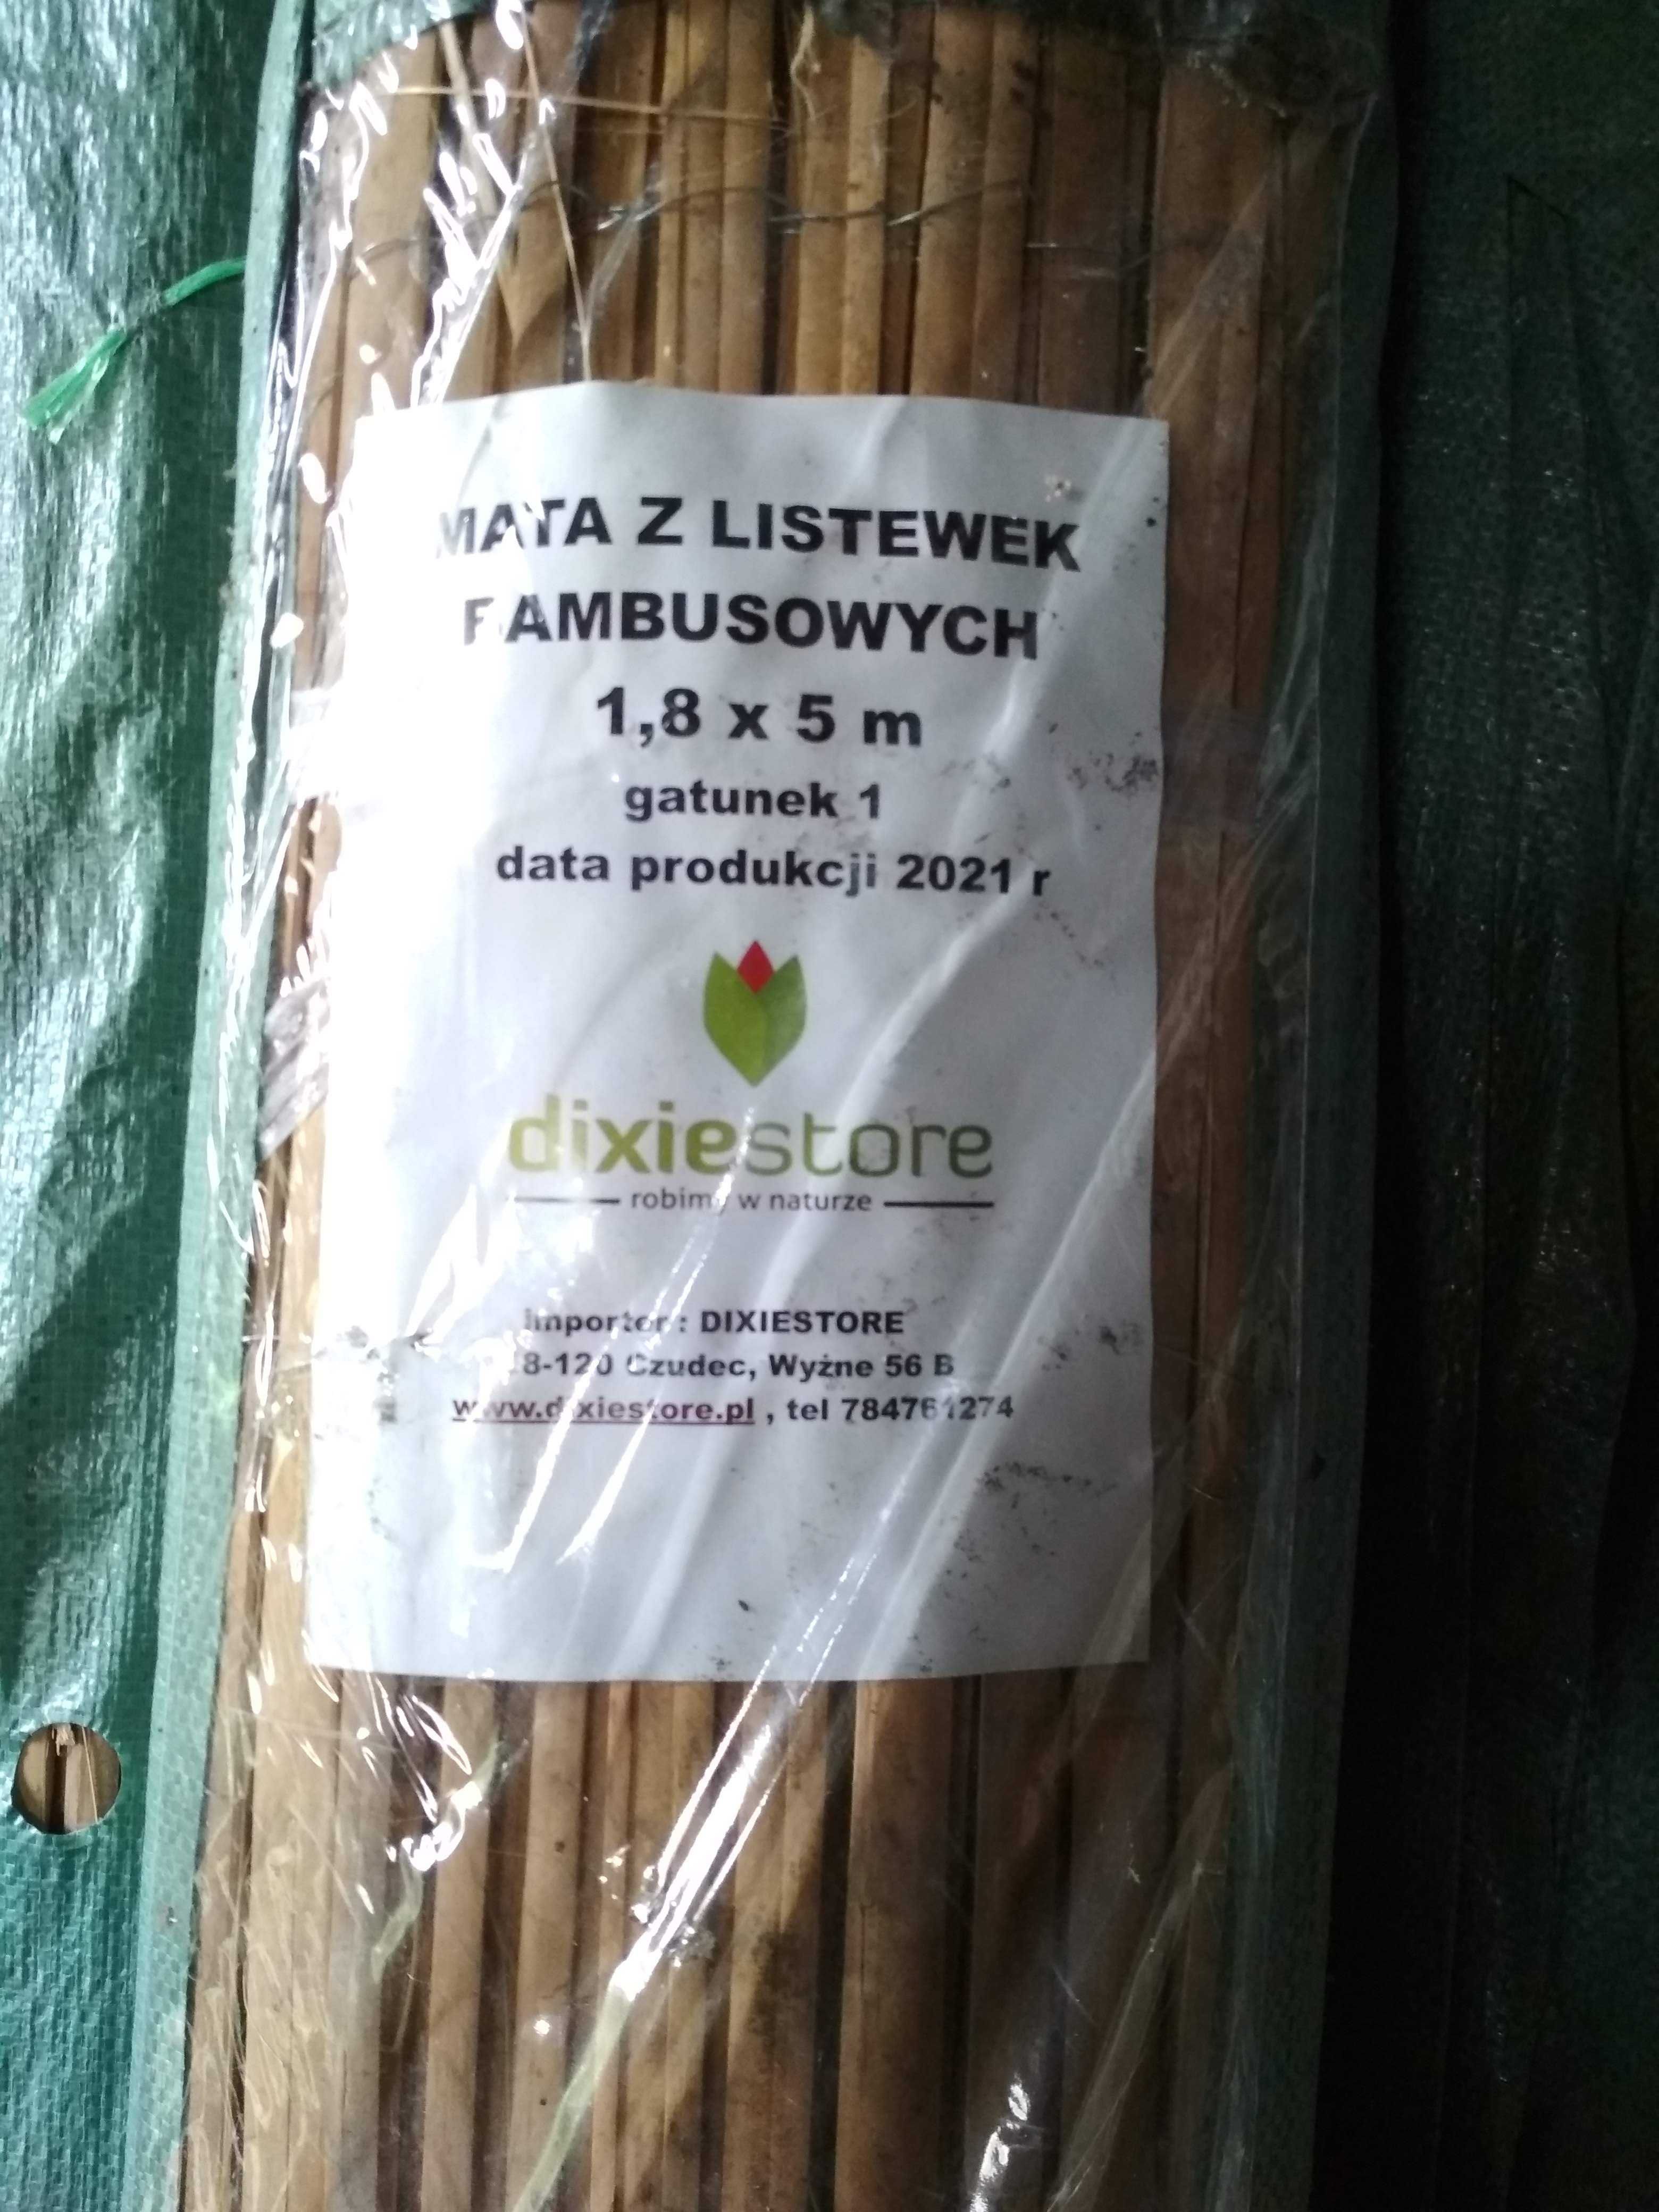 Mata osłona z listewek bambusowych 1,8 x 5 m mata bambusowa - 3 sztuki